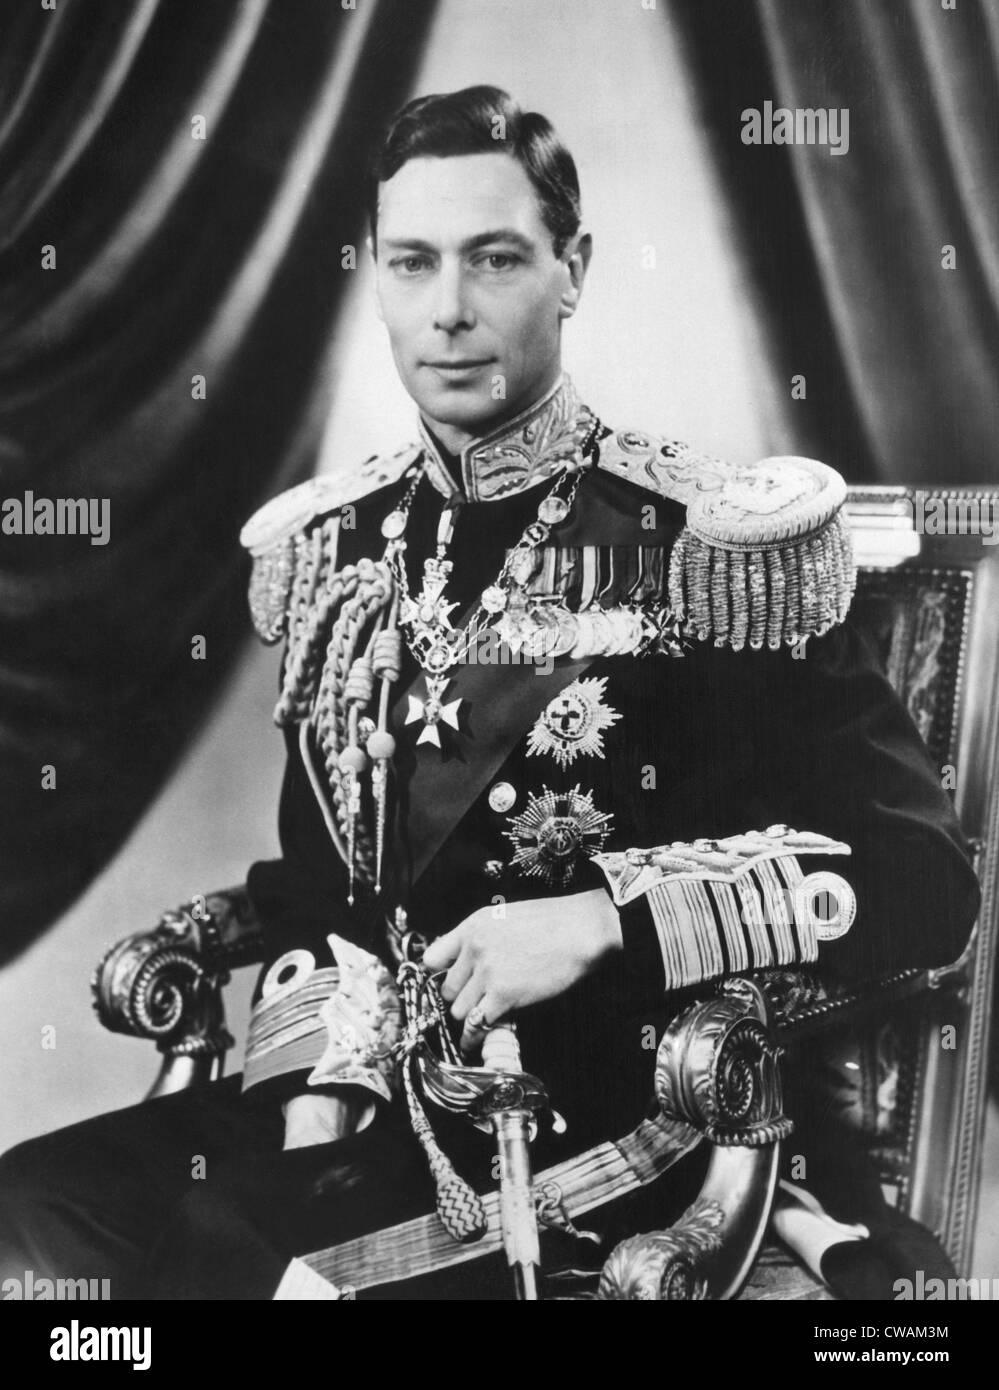 König George VI (1895 – 1952), König des Vereinigten Königreichs, 3. Mai 1937... Höflichkeit: CSU Archive / Everett Collection Stockfoto